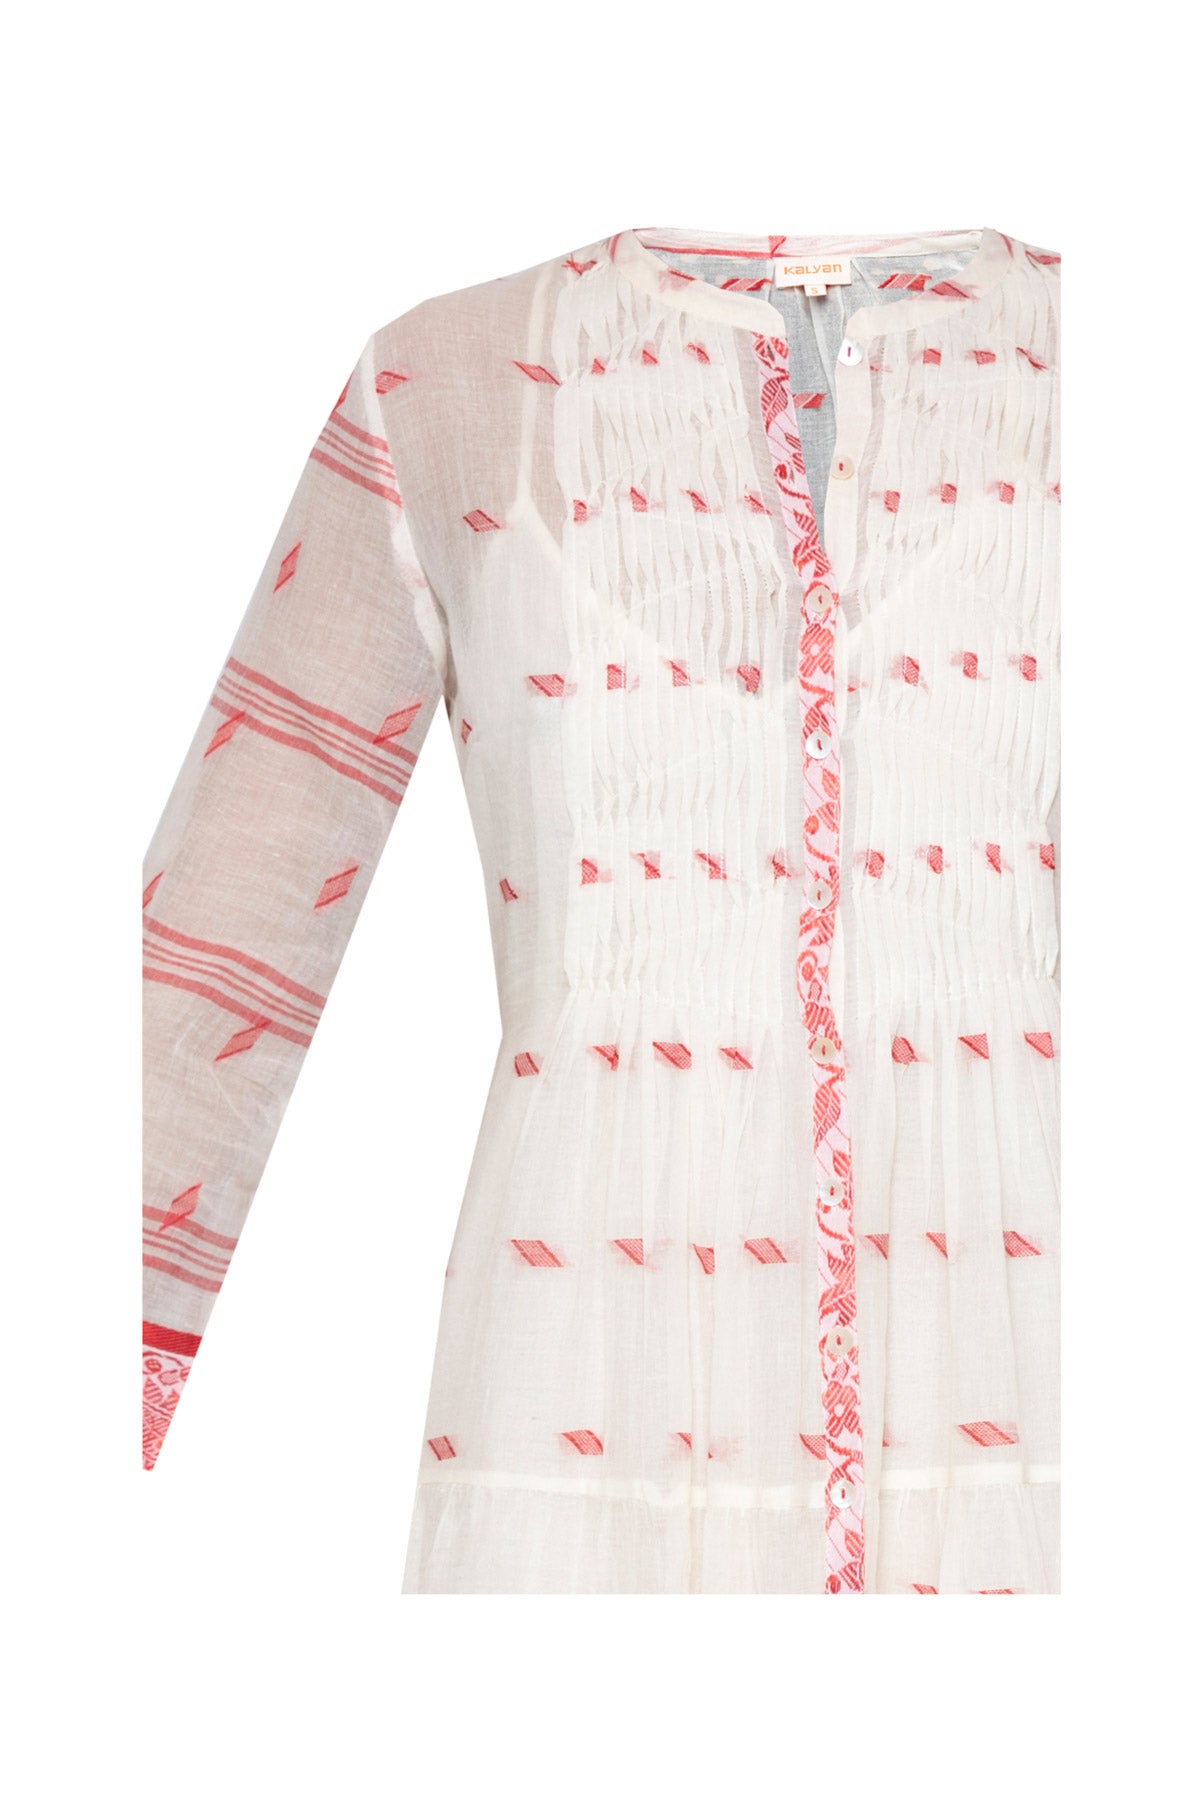 Longfrill Cotton Dress - Off White & Pink